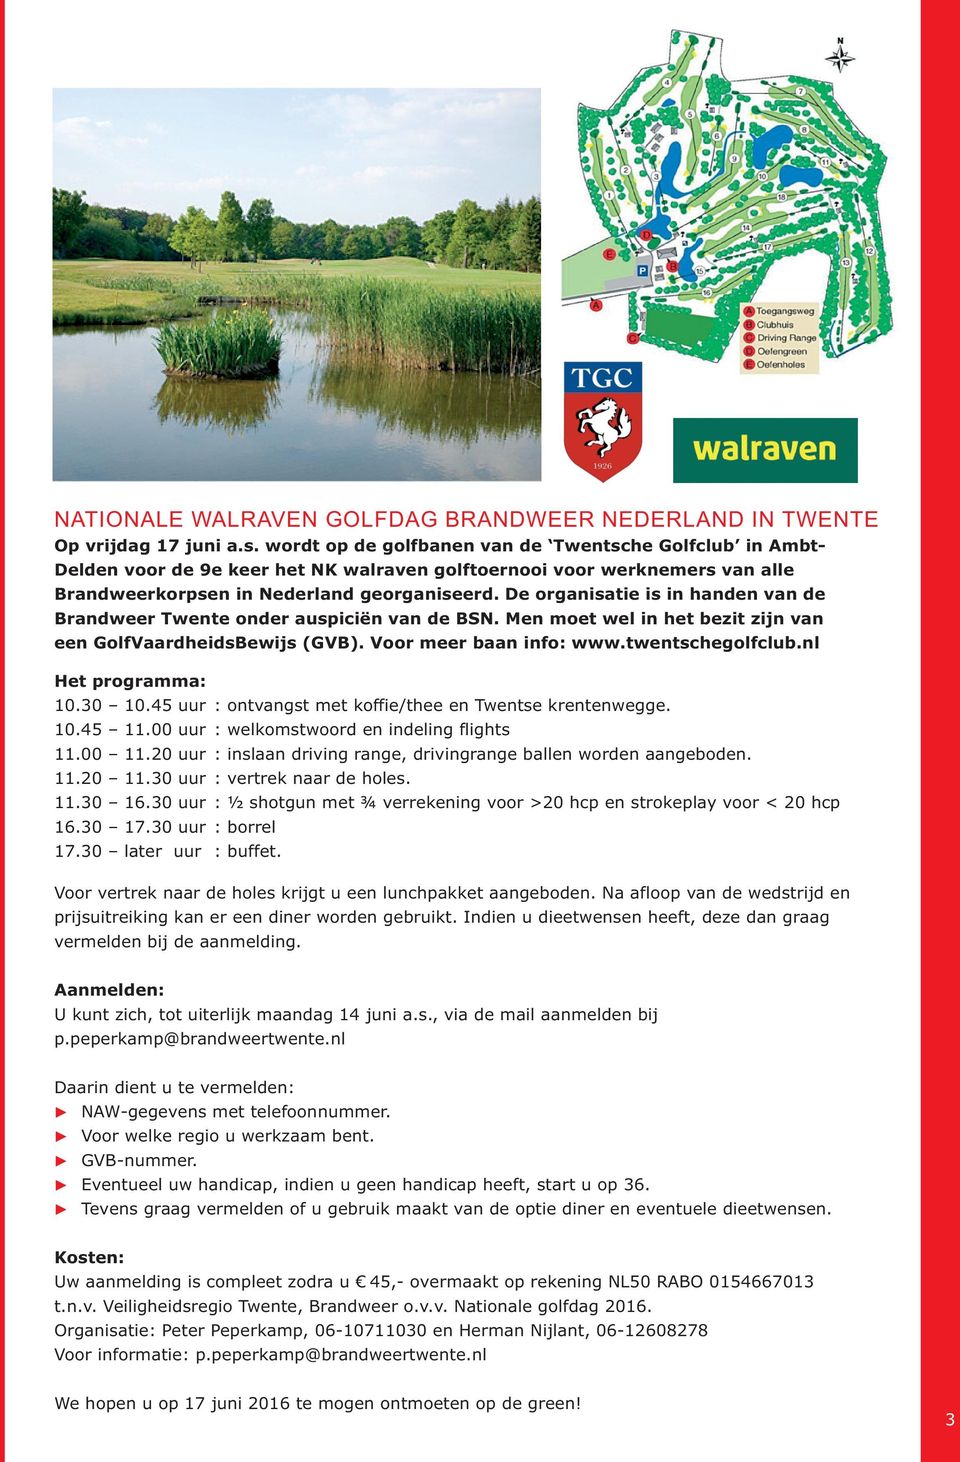 De organisatie is in handen van de Brandweer Twente onder auspiciën van de BSN. Men moet wel in het bezit zijn van een GolfVaardheidsBewijs (GVB). Voor meer baan info: www.twentschegolfclub.